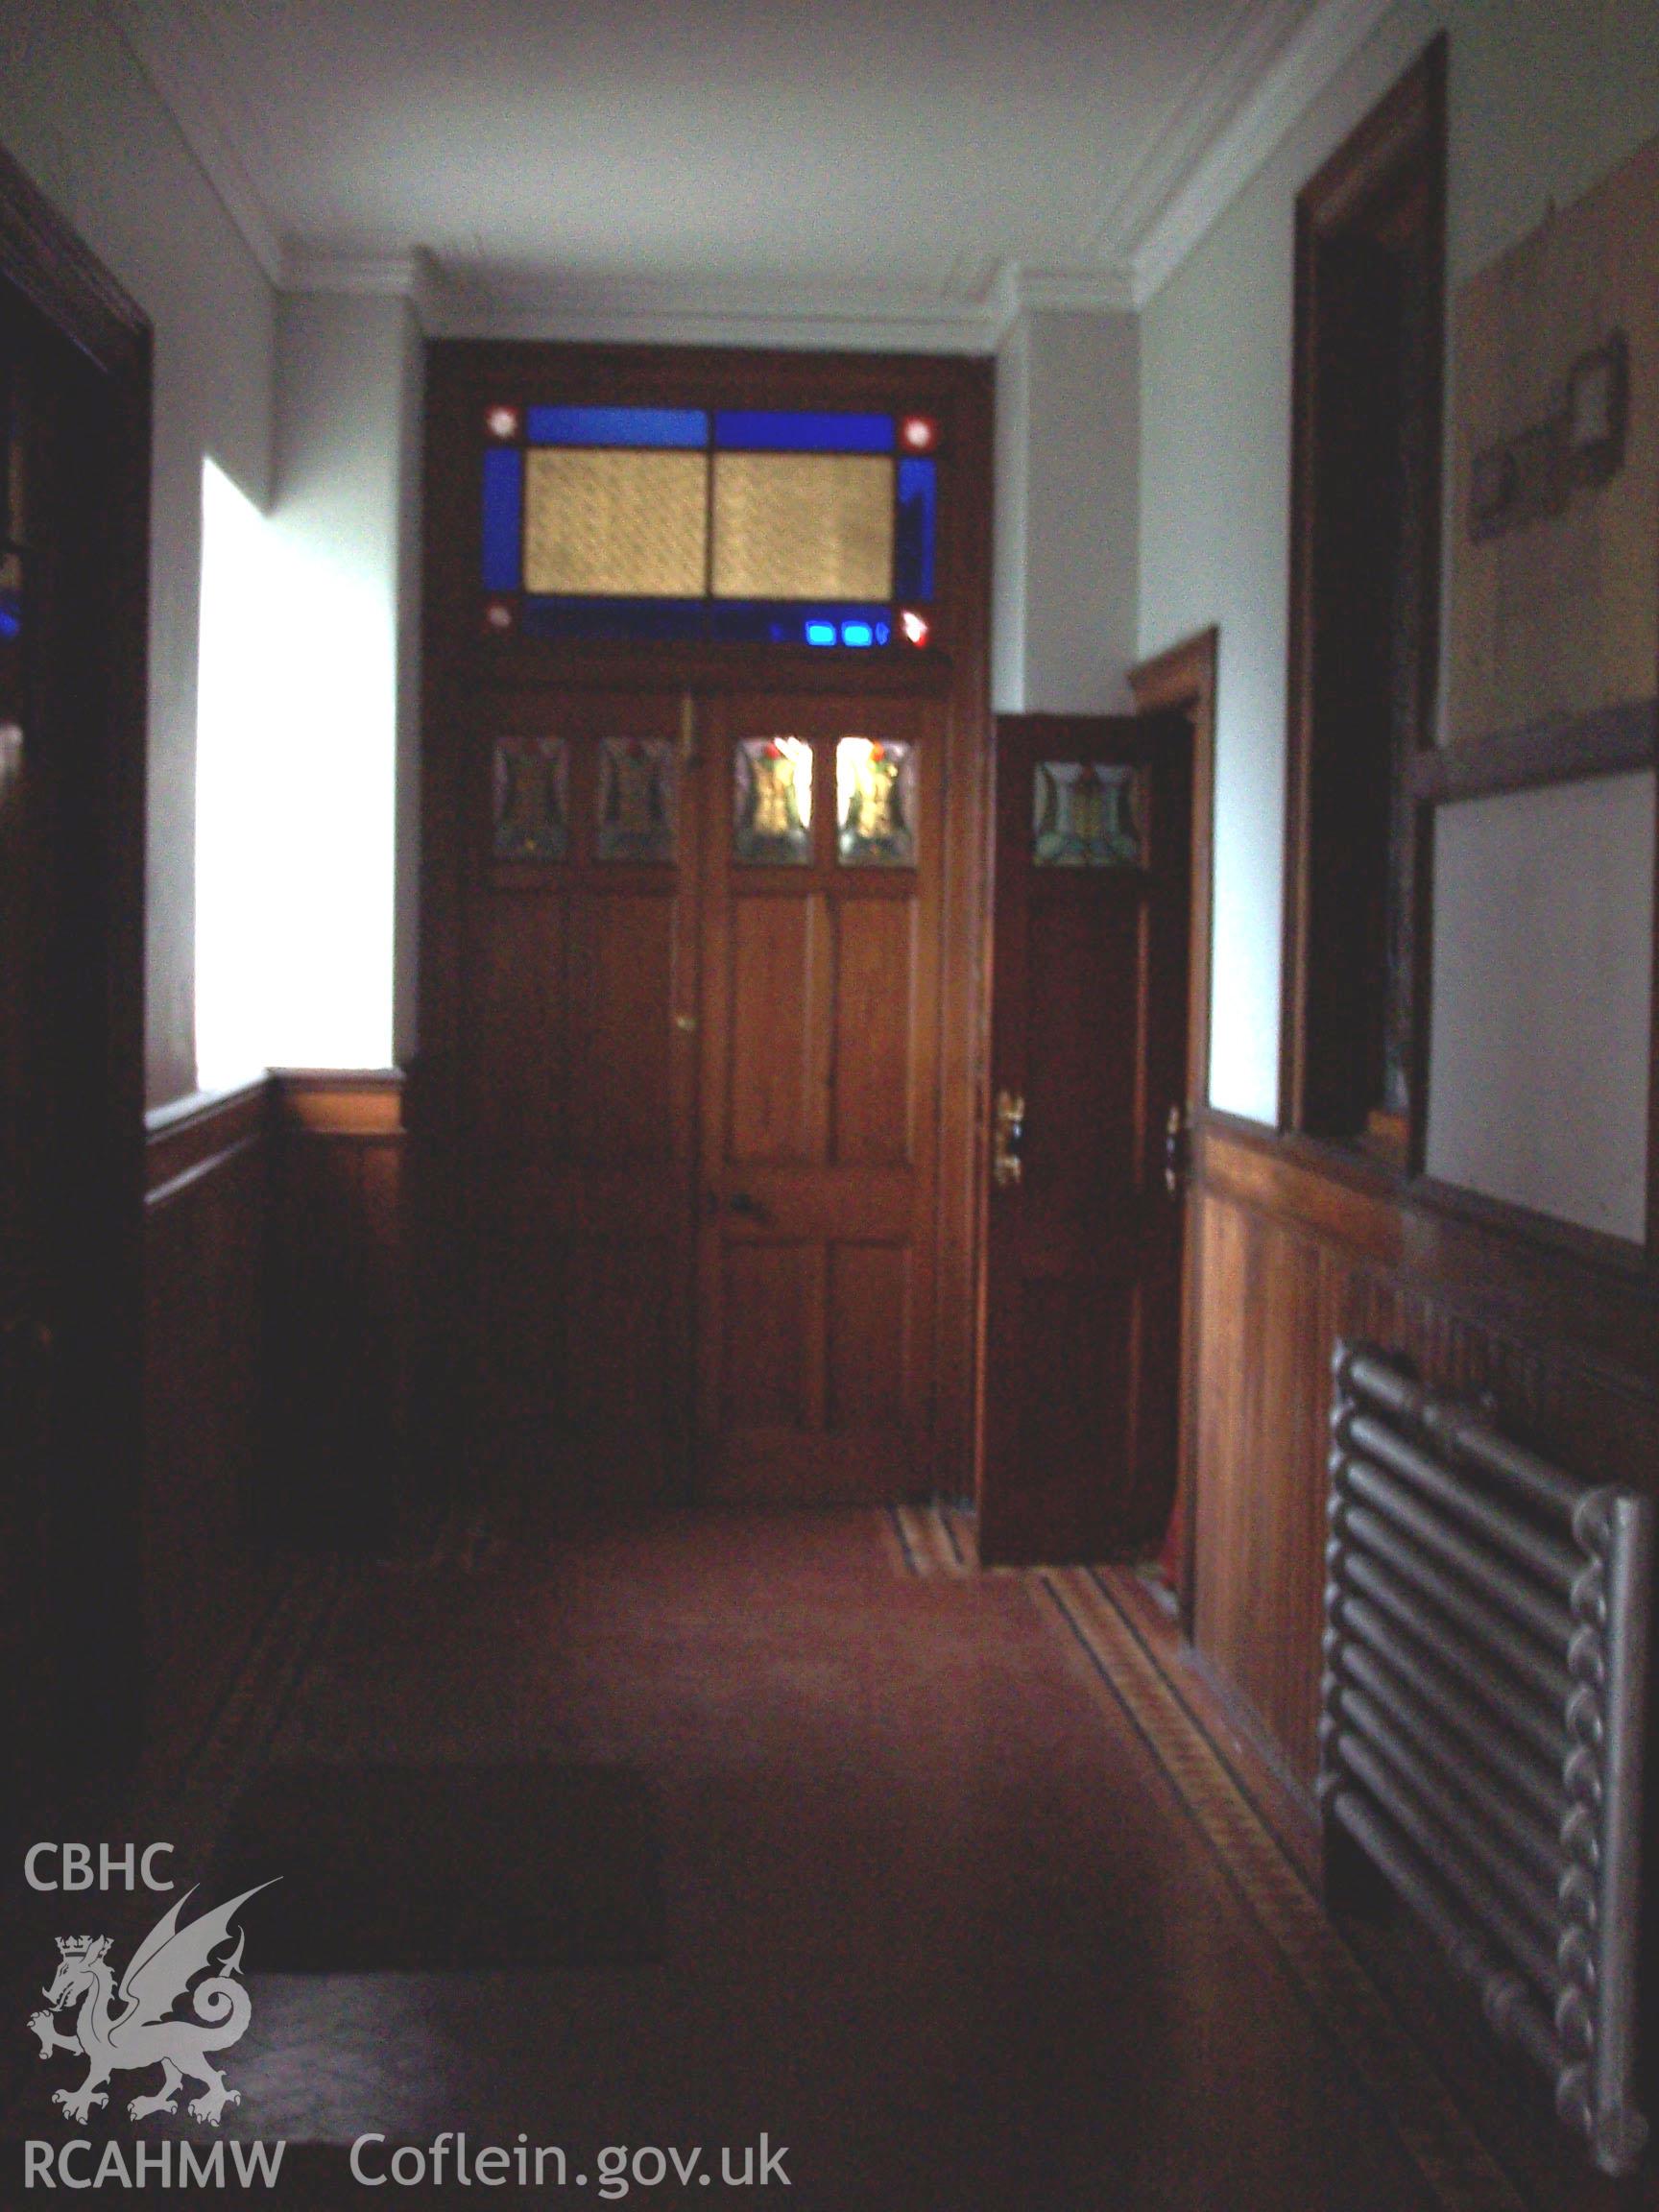 Chapel: Interior - vestibule lobby looking towards doors to gallery staircase.